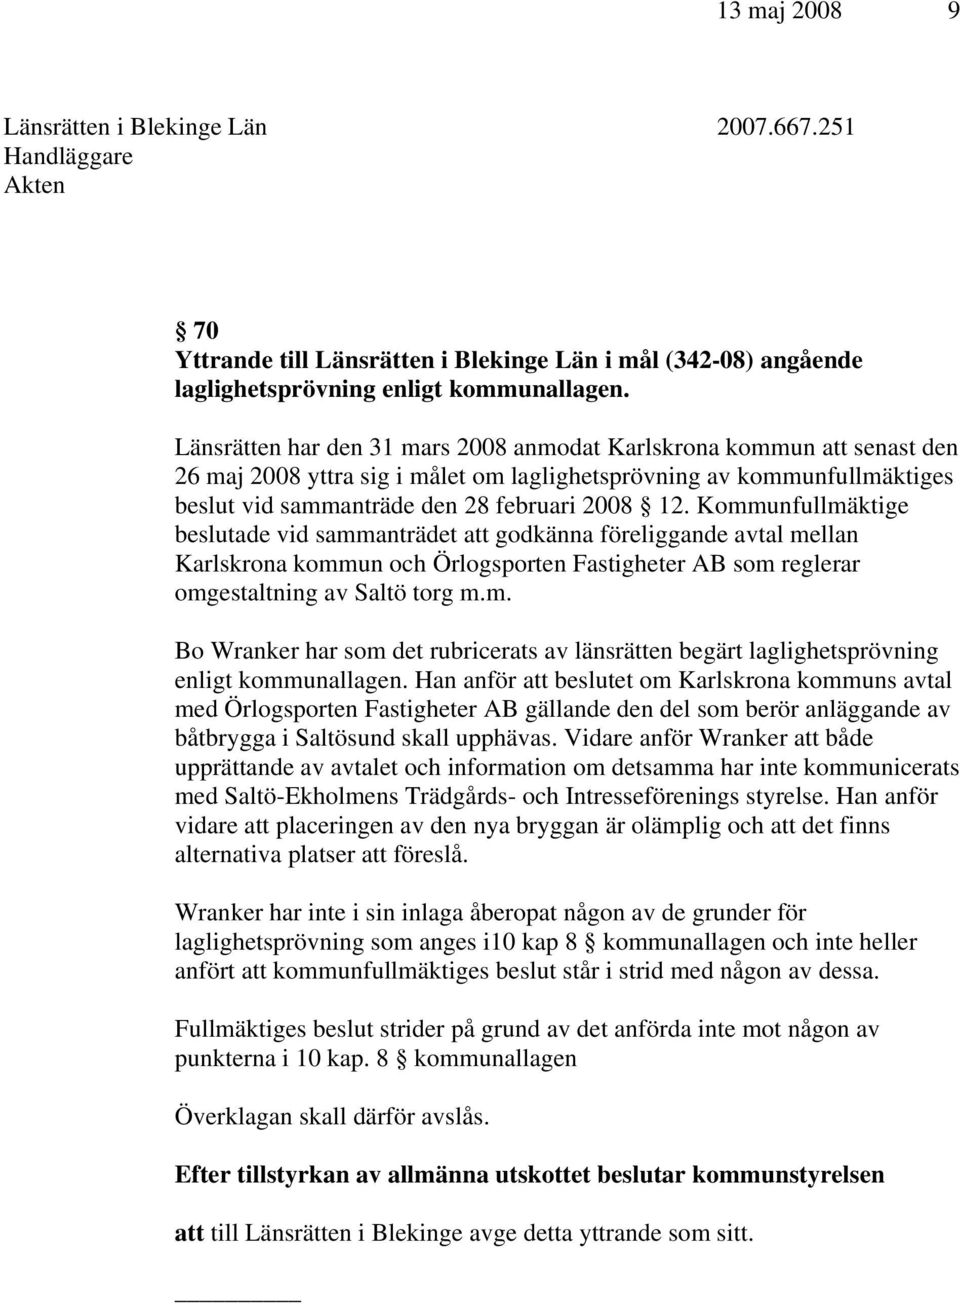 Kommunfullmäktige beslutade vid sammanträdet att godkänna föreliggande avtal mellan Karlskrona kommun och Örlogsporten Fastigheter AB som reglerar omgestaltning av Saltö torg m.m. Bo Wranker har som det rubricerats av länsrätten begärt laglighetsprövning enligt kommunallagen.